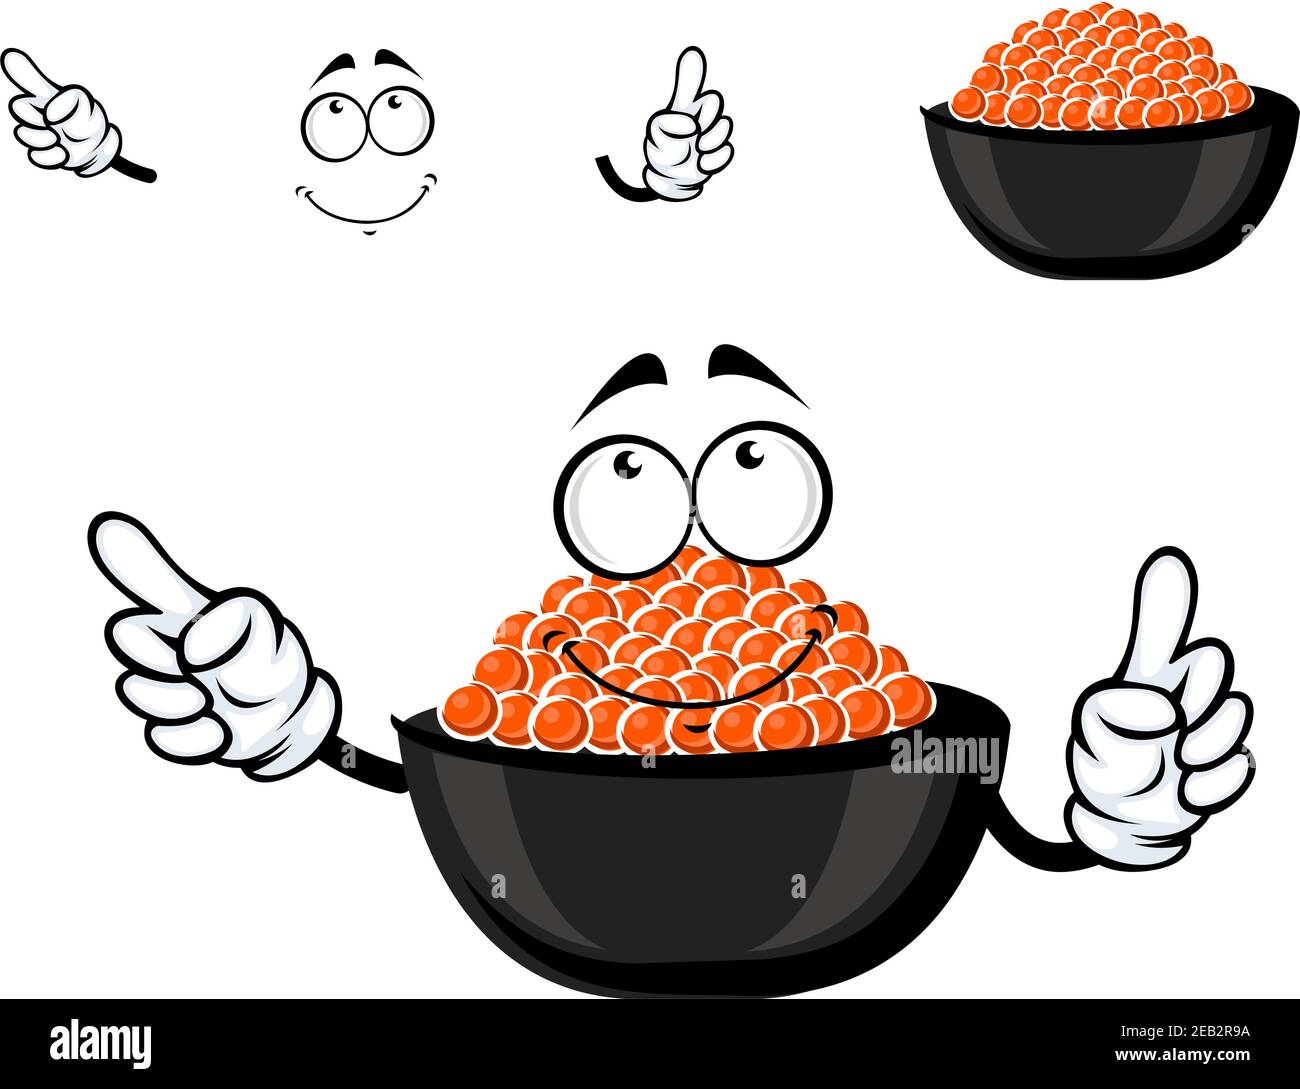 Rote Kaviar Schüssel Cartoon-Figur mit kaltem Lachs Kaviar, für Meeresfrüchte oder Delikatessen-Menü Themen Stock Vektor